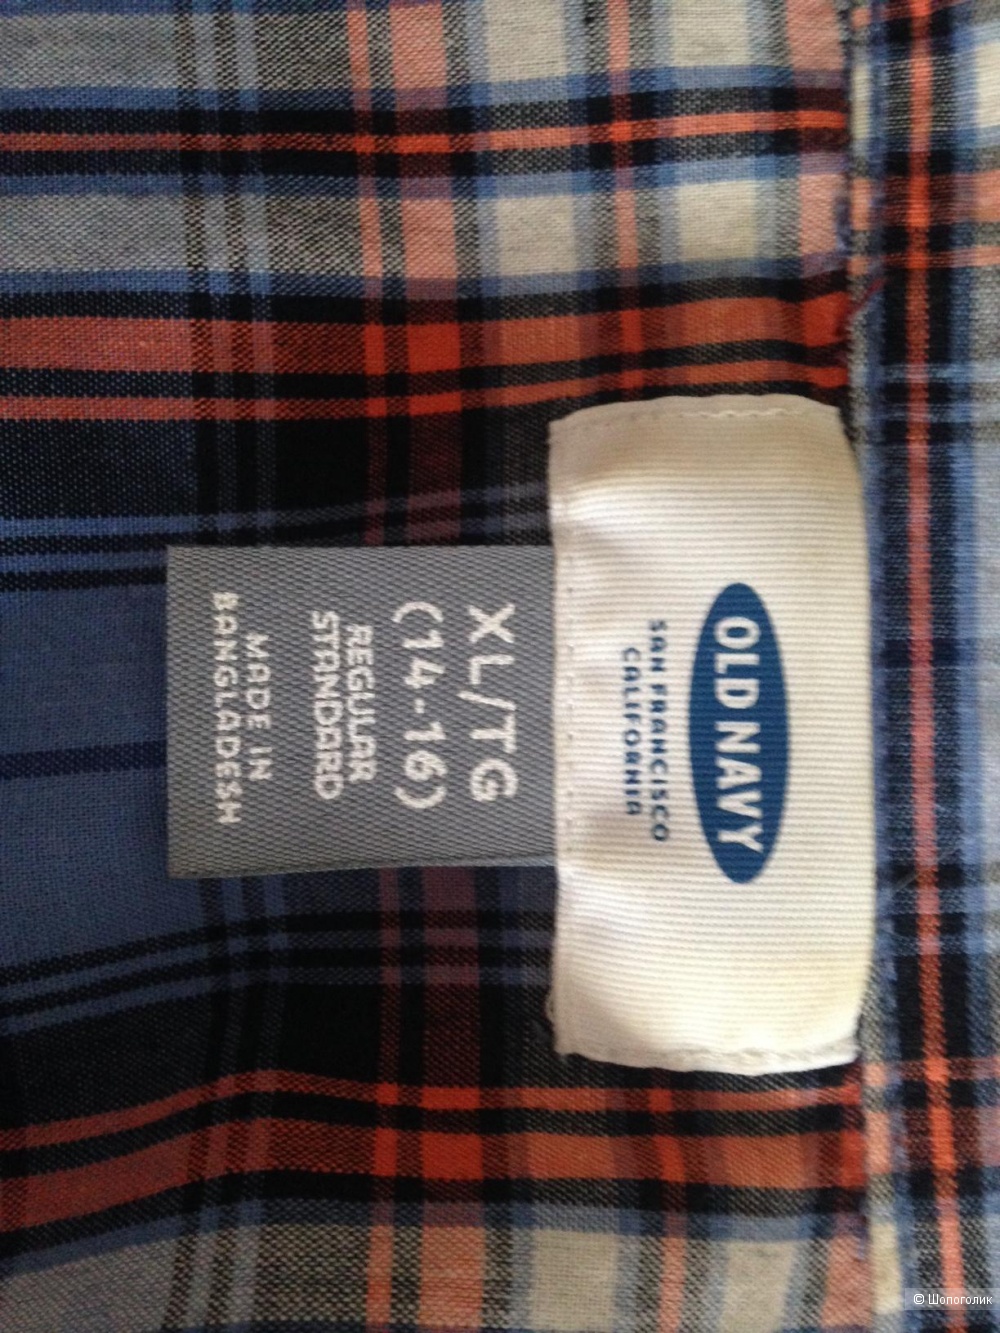 Рубашки для подростка Gap и Oldnavy размер 14-16 (рост 170-176) сет из 3 шт.